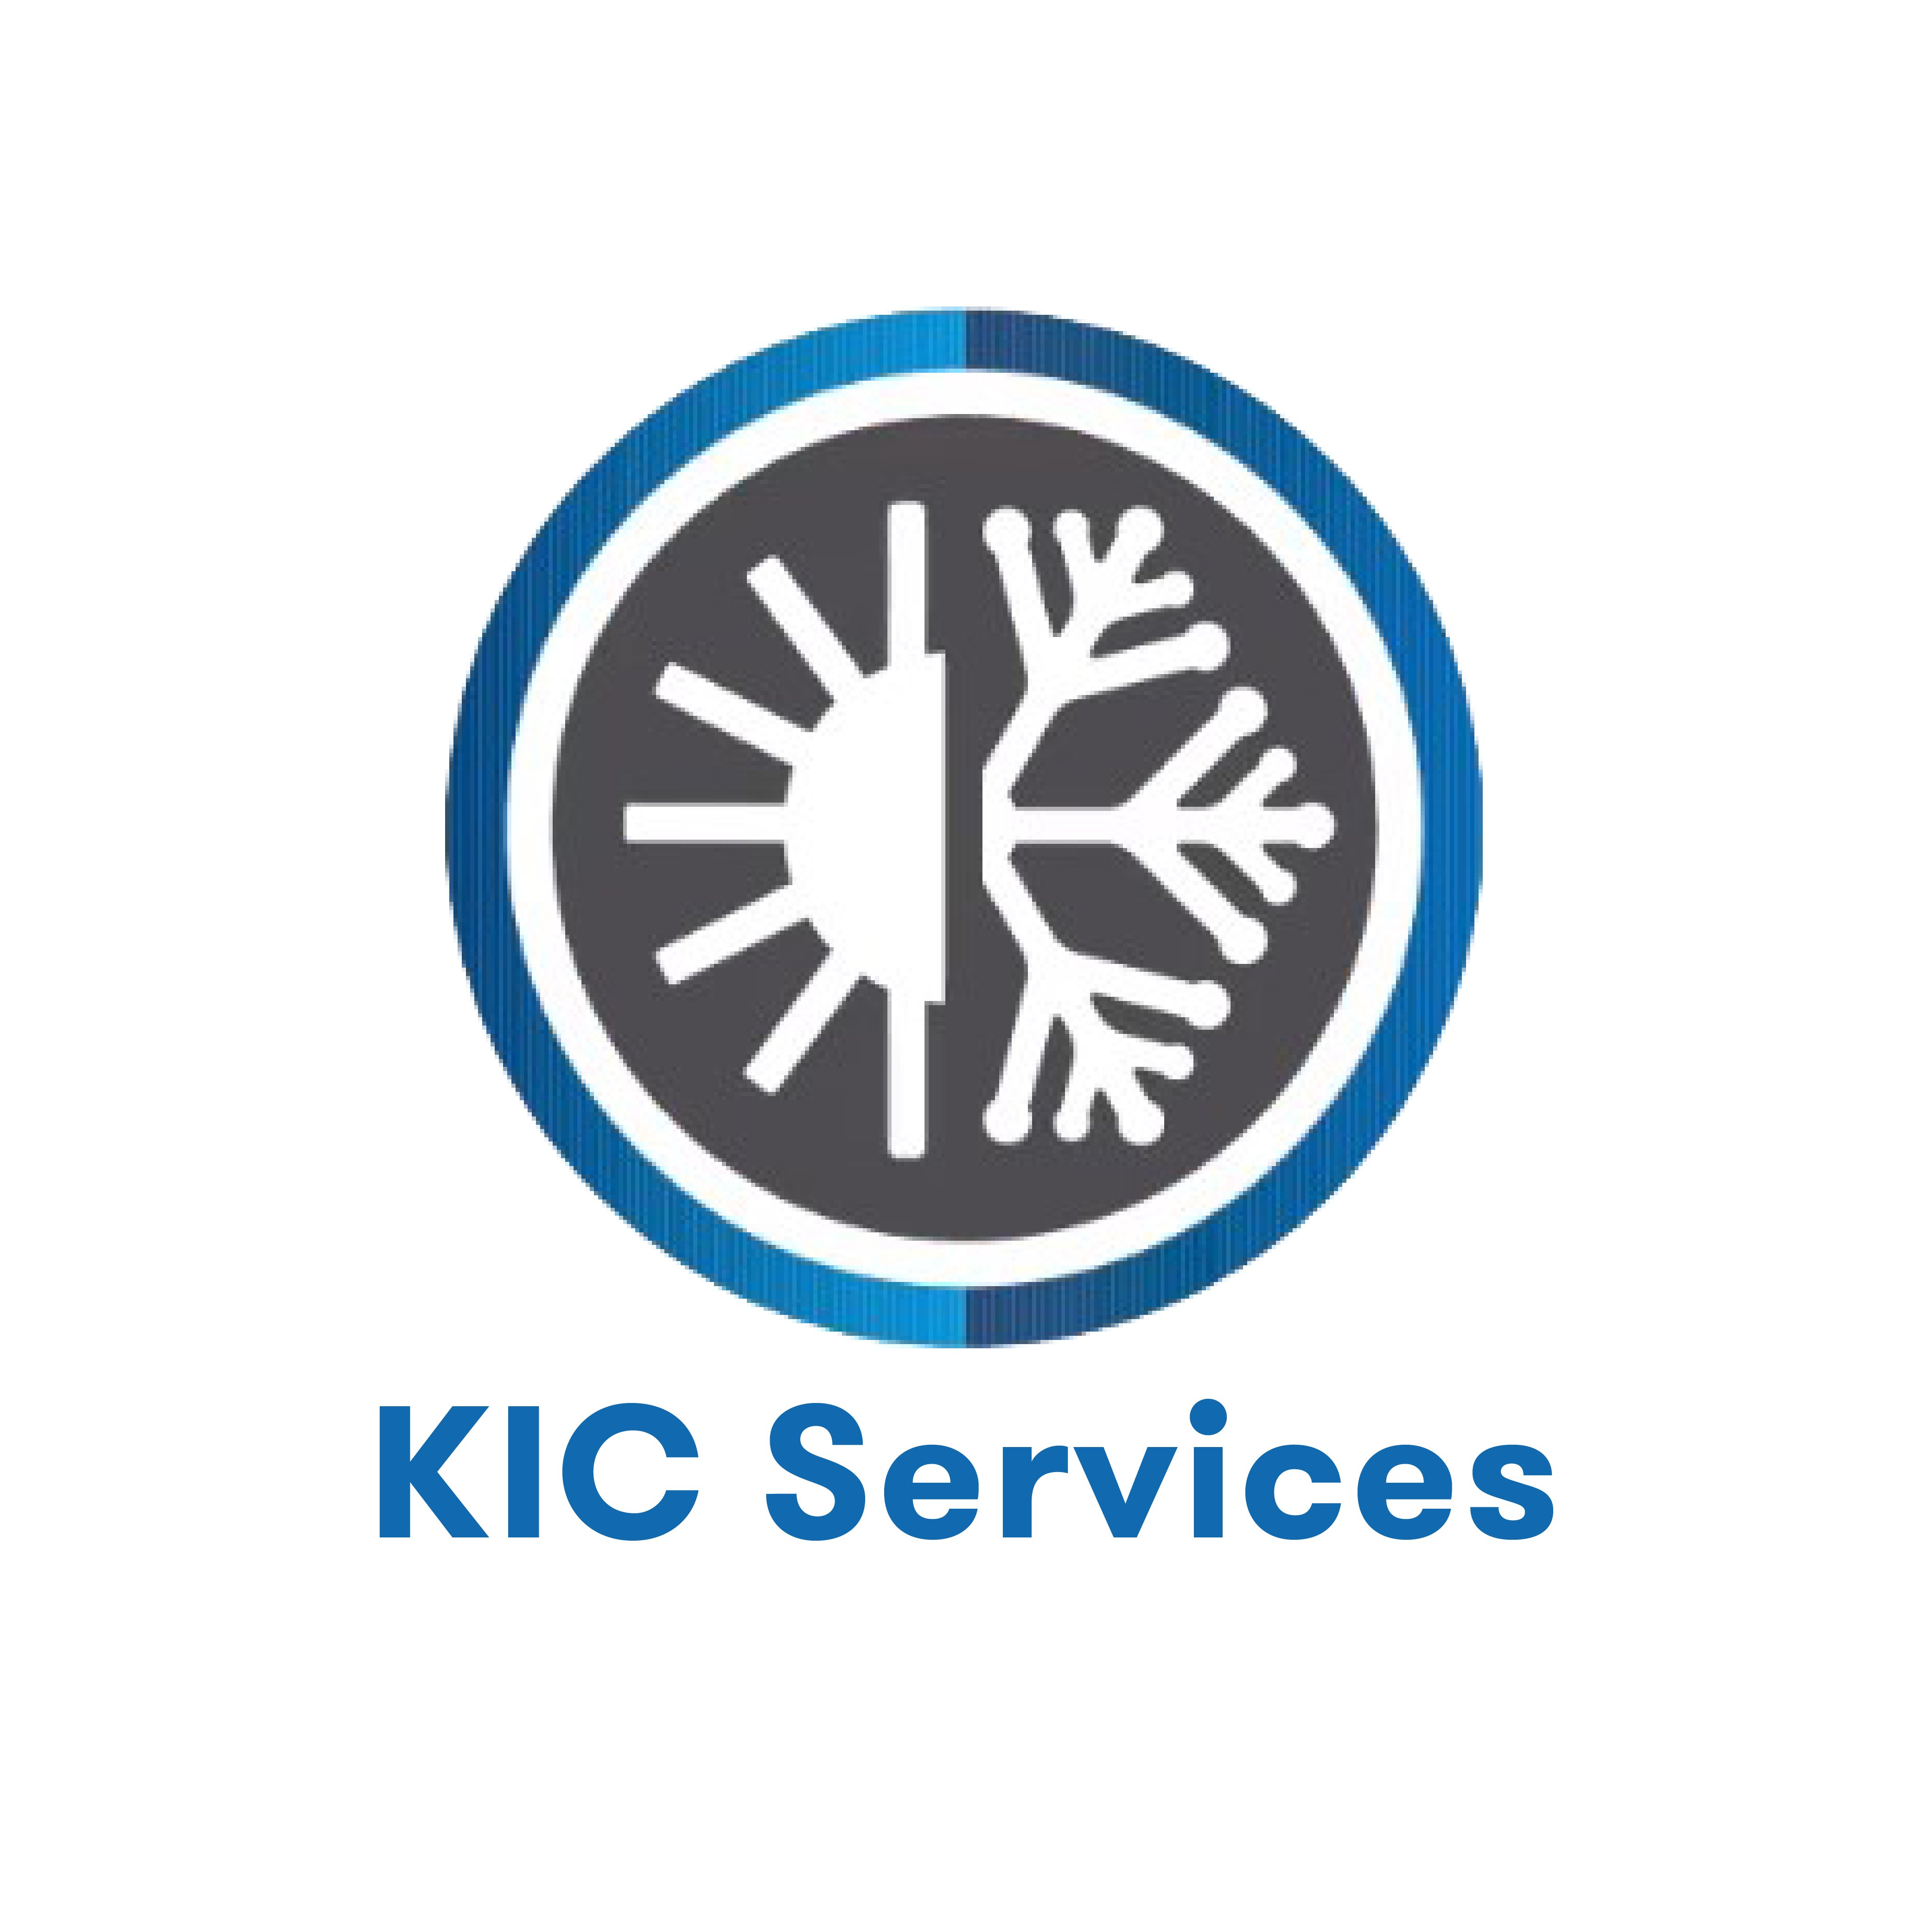 KIC Services